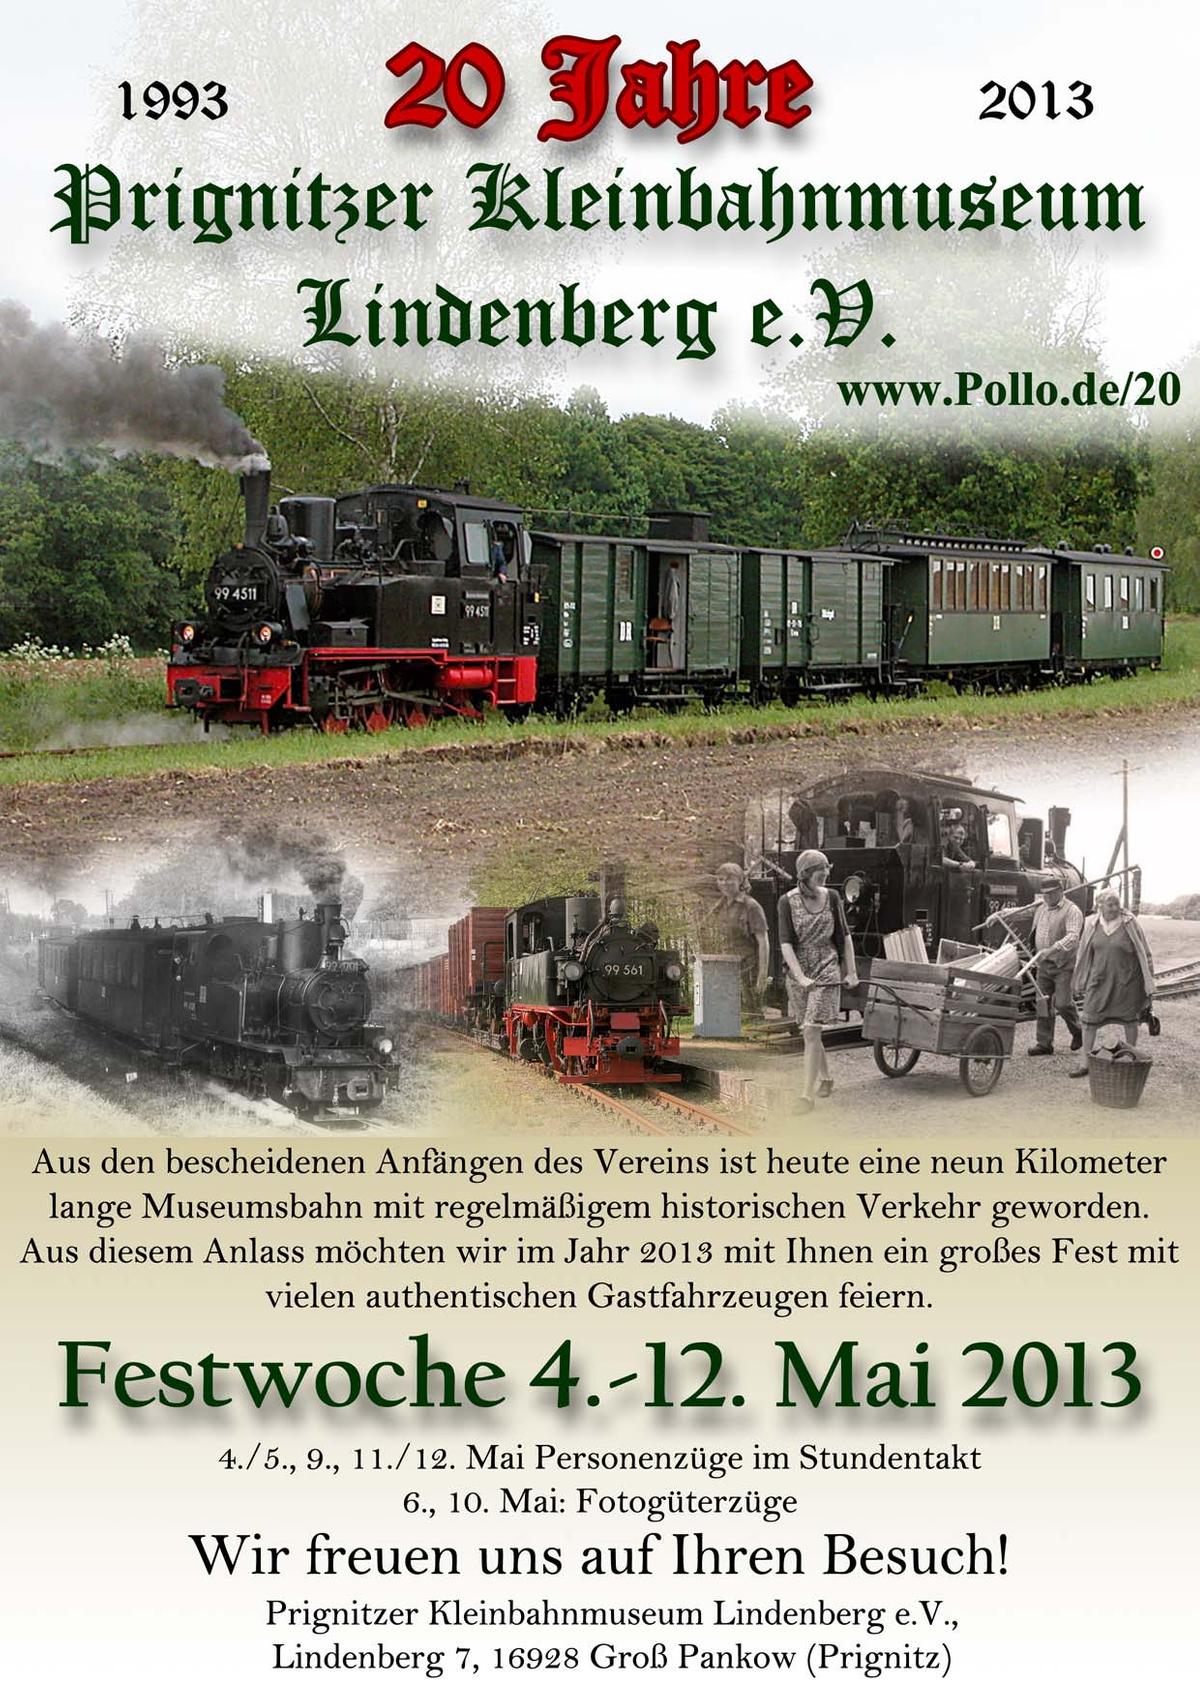 Veranstaltungsankündigung: 4.-12. Mai 2013: Festwoche 20 Jahre Prignitzer Kleinbahnmuseum Lindenberg